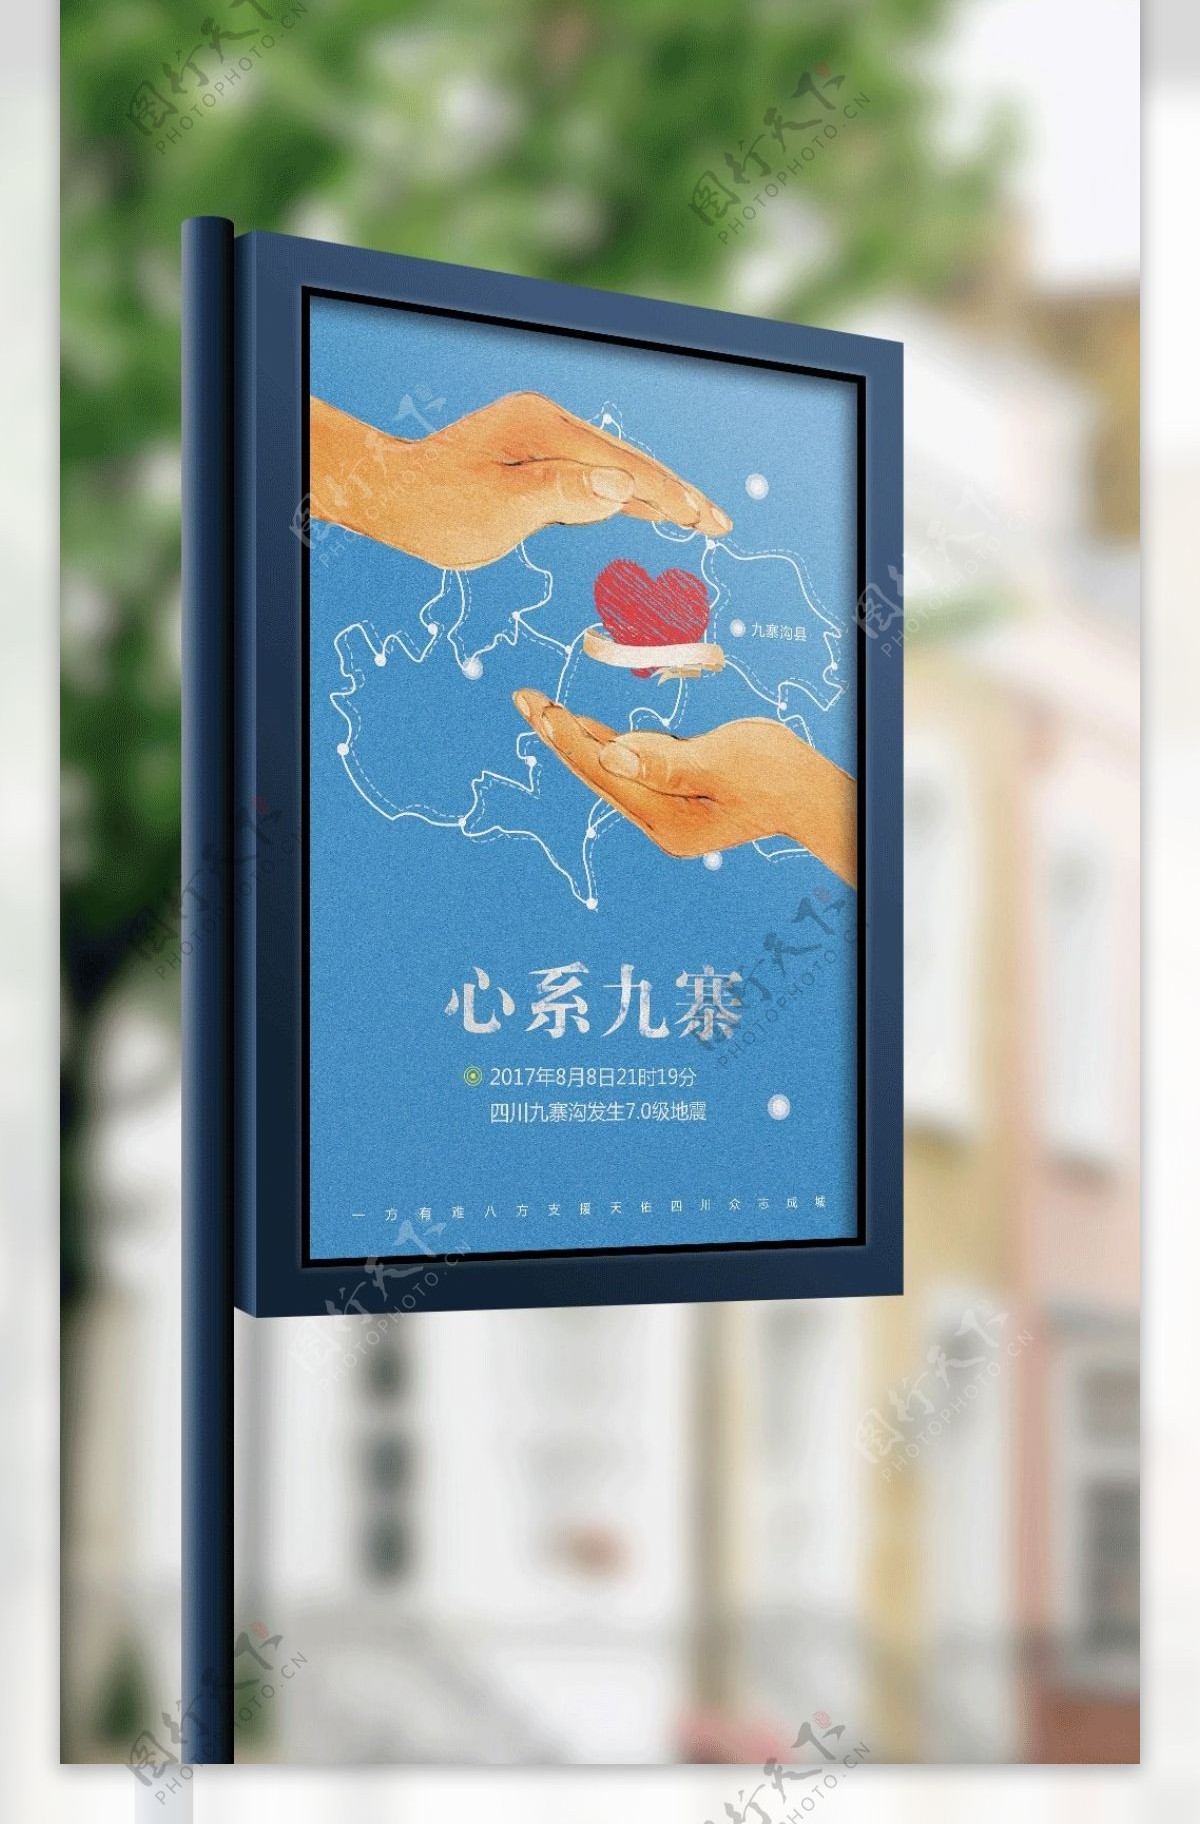 九寨沟地震祈福公益海报设计